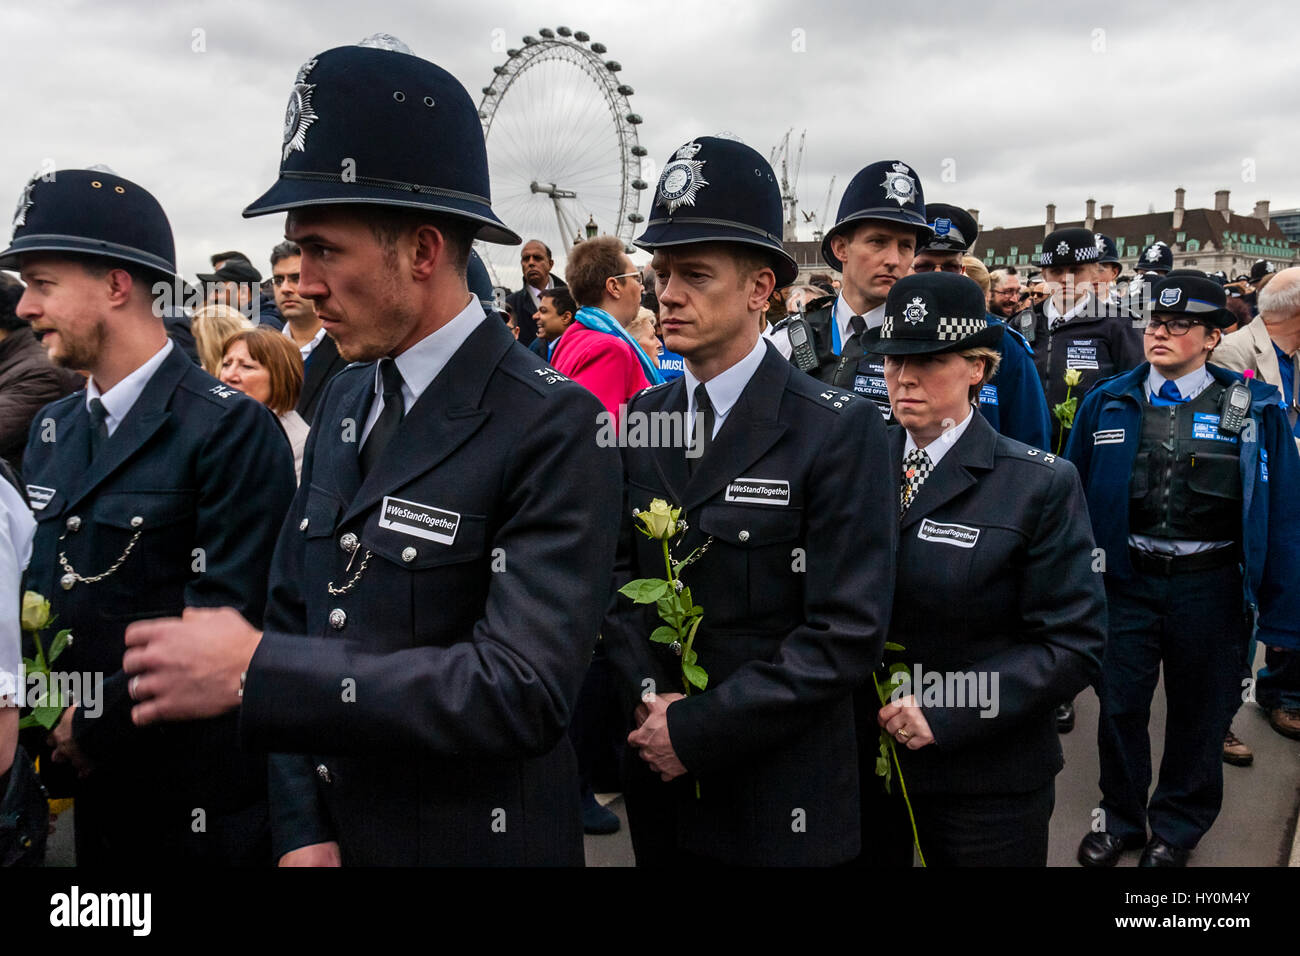 Une semaine après l'attaque terroriste de Londres la Police métropolitaine hommage aux victimes, le pont de Westminster, Londres, Angleterre Banque D'Images